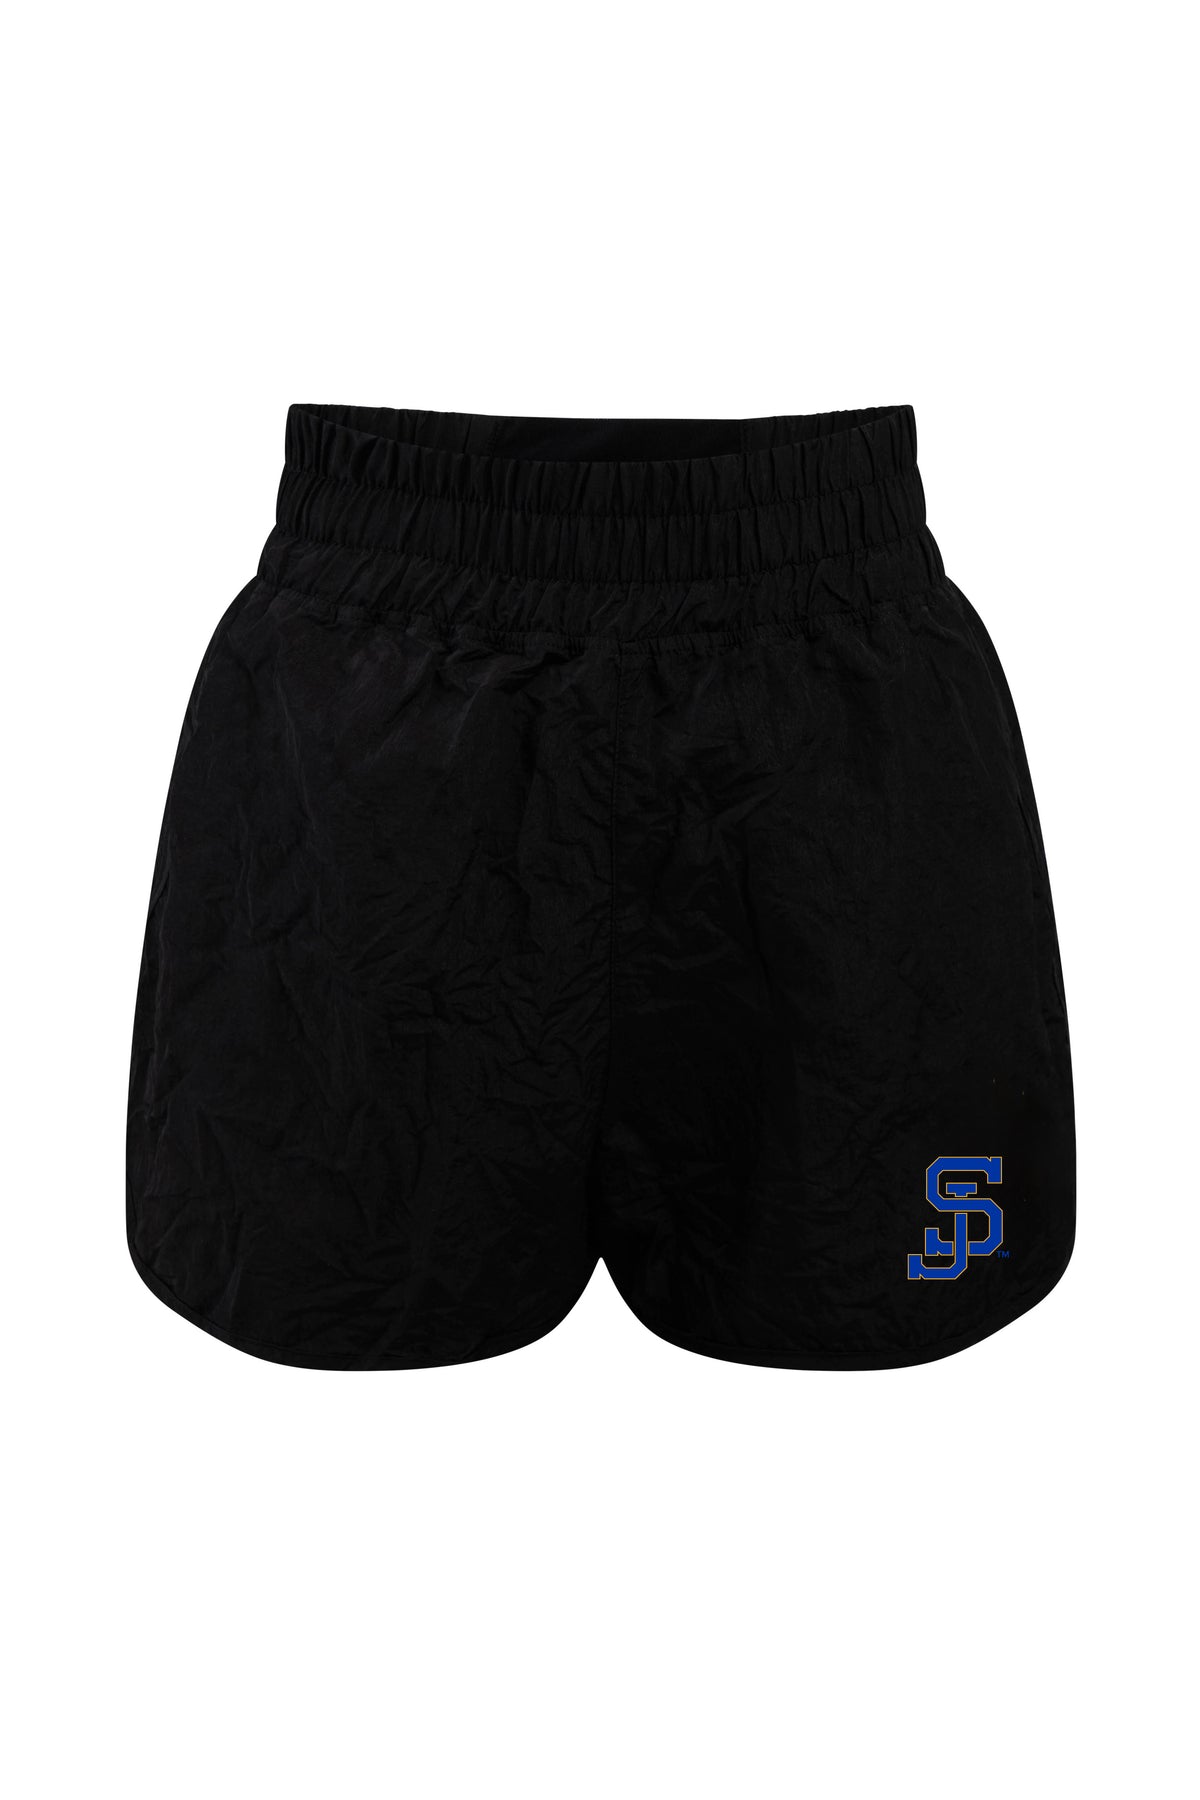 San Jose State University Boxer Short